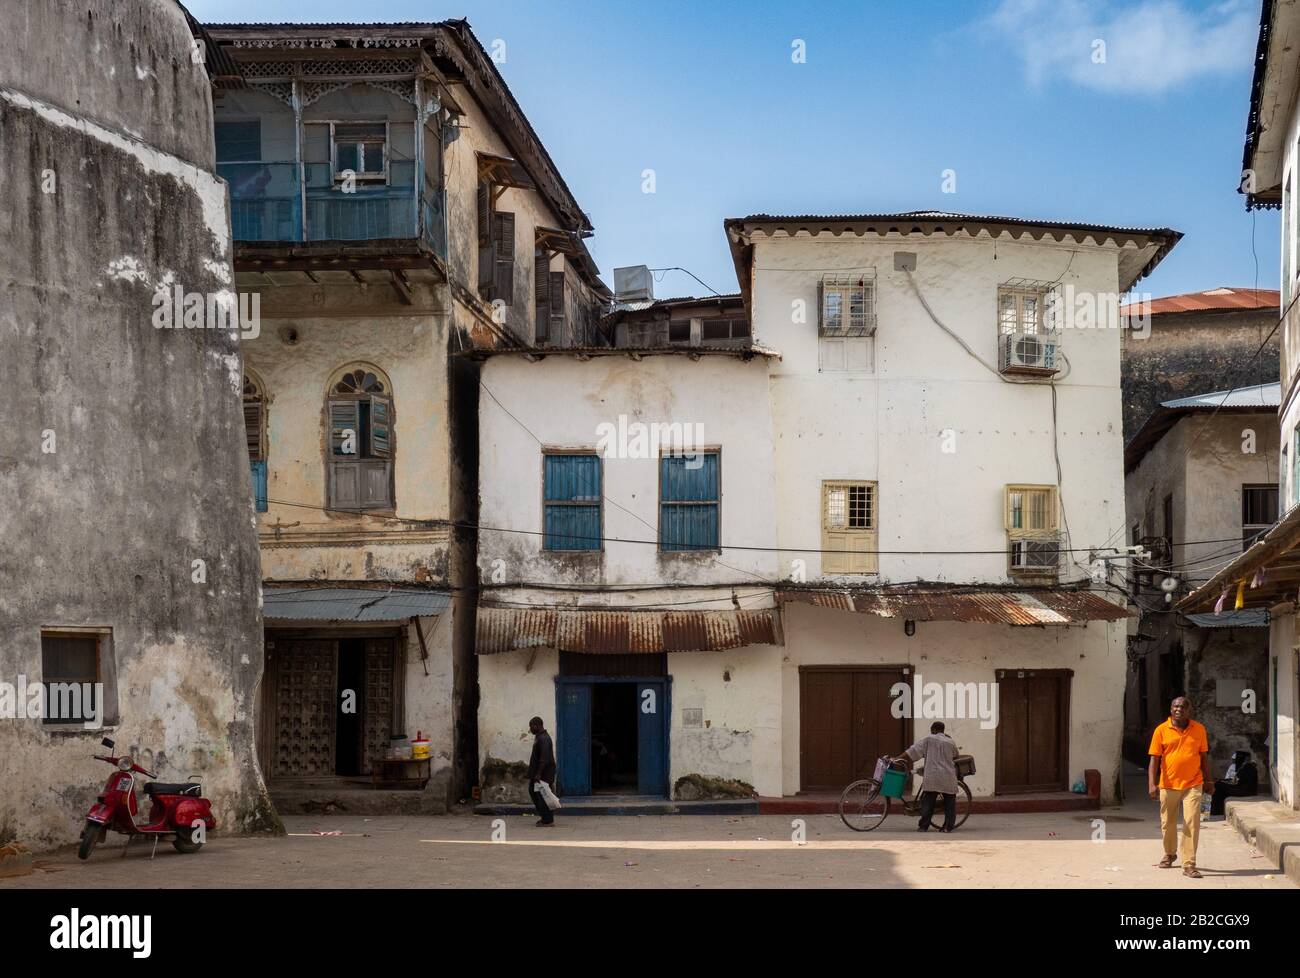 Image from Zanzibar City and Stone Town, the main city on the Zanzibar island in Tanzania Stock Photo